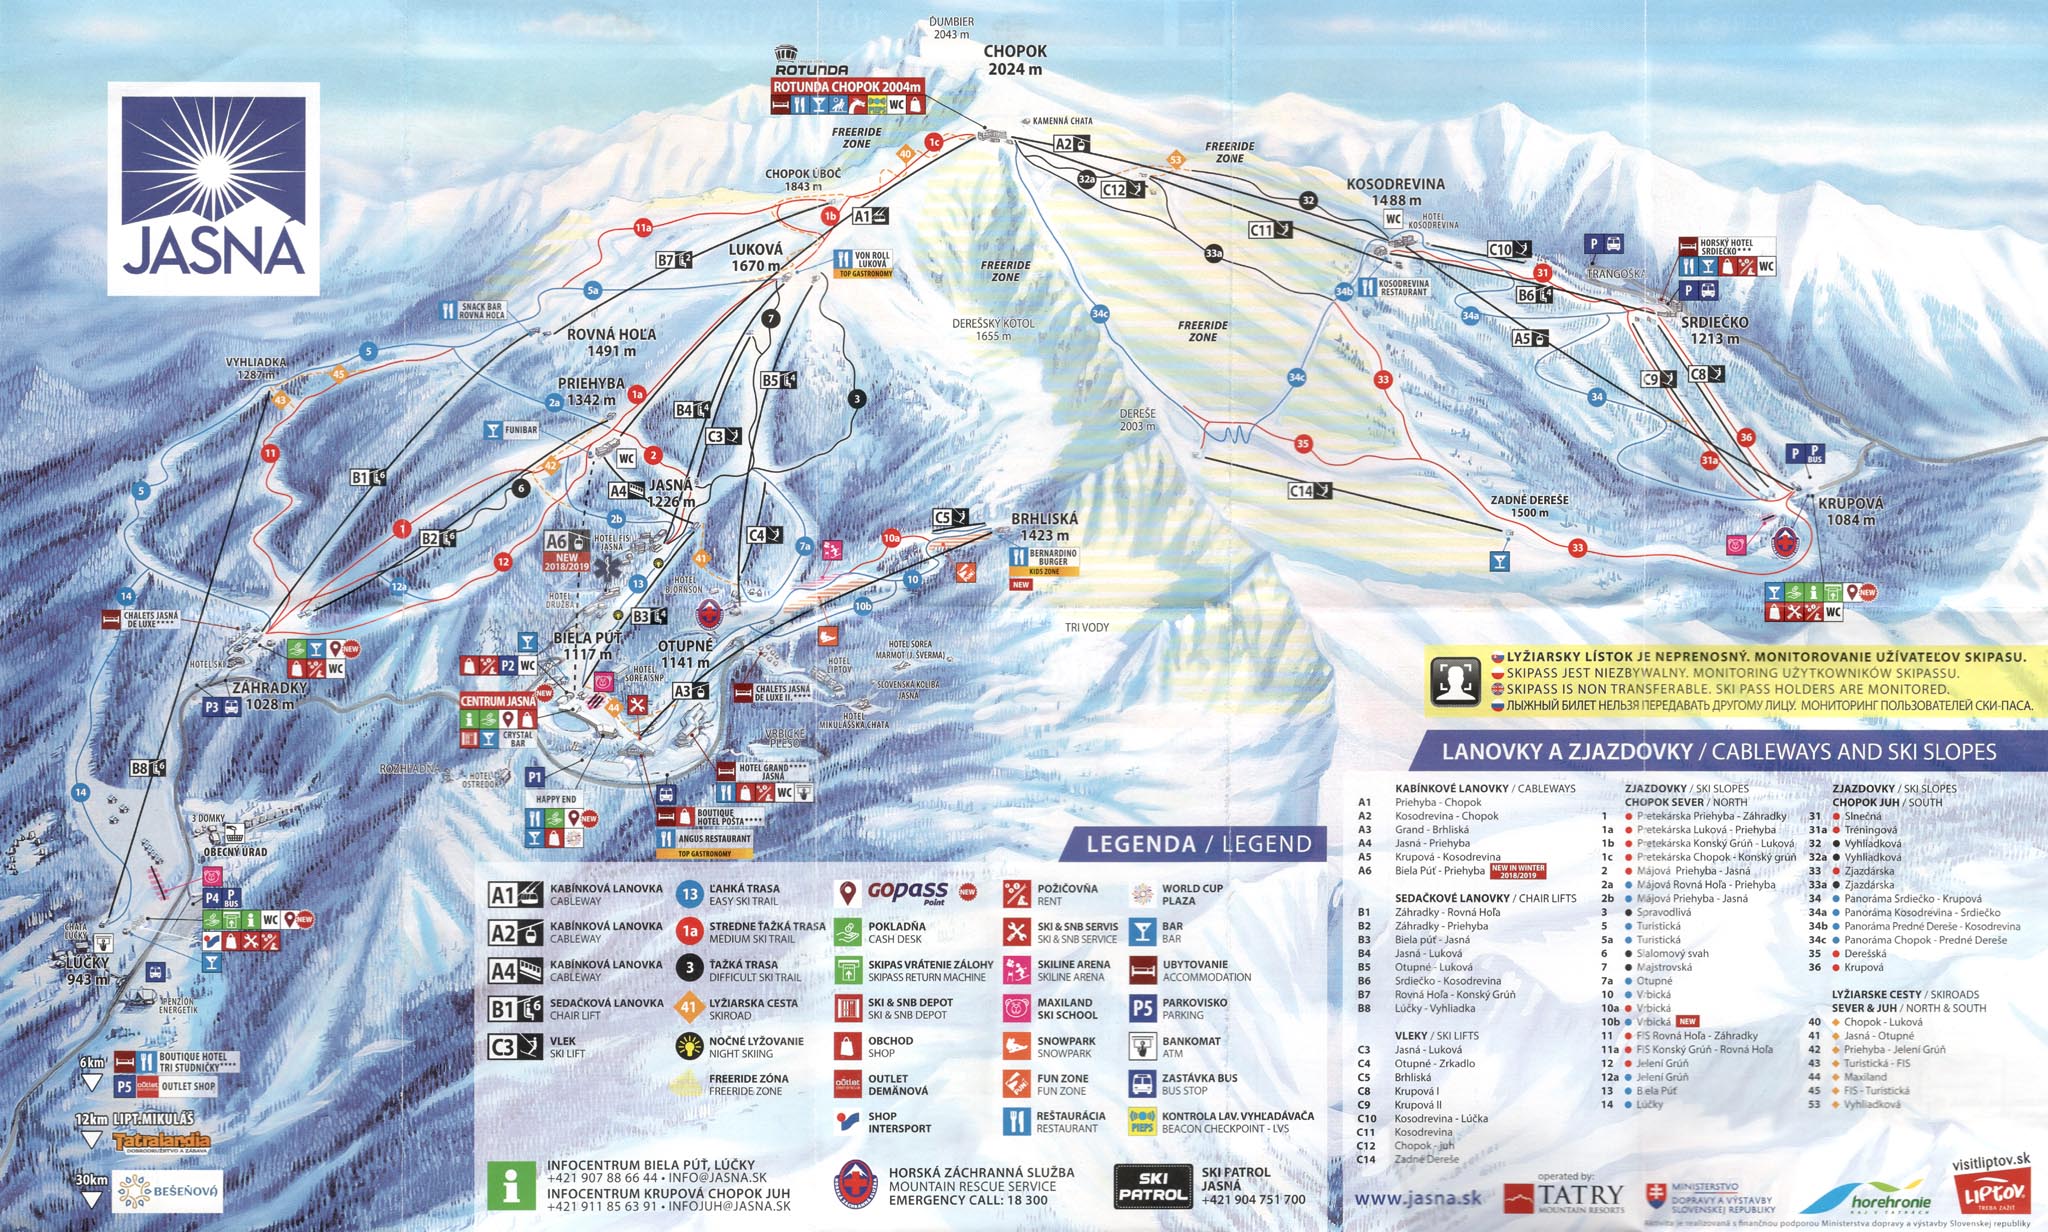 Словакия, горнолыжный курорт Ясна. Карта трасс и подъемников горнолыжного курорта Ясна (зима 2017-2018 років).